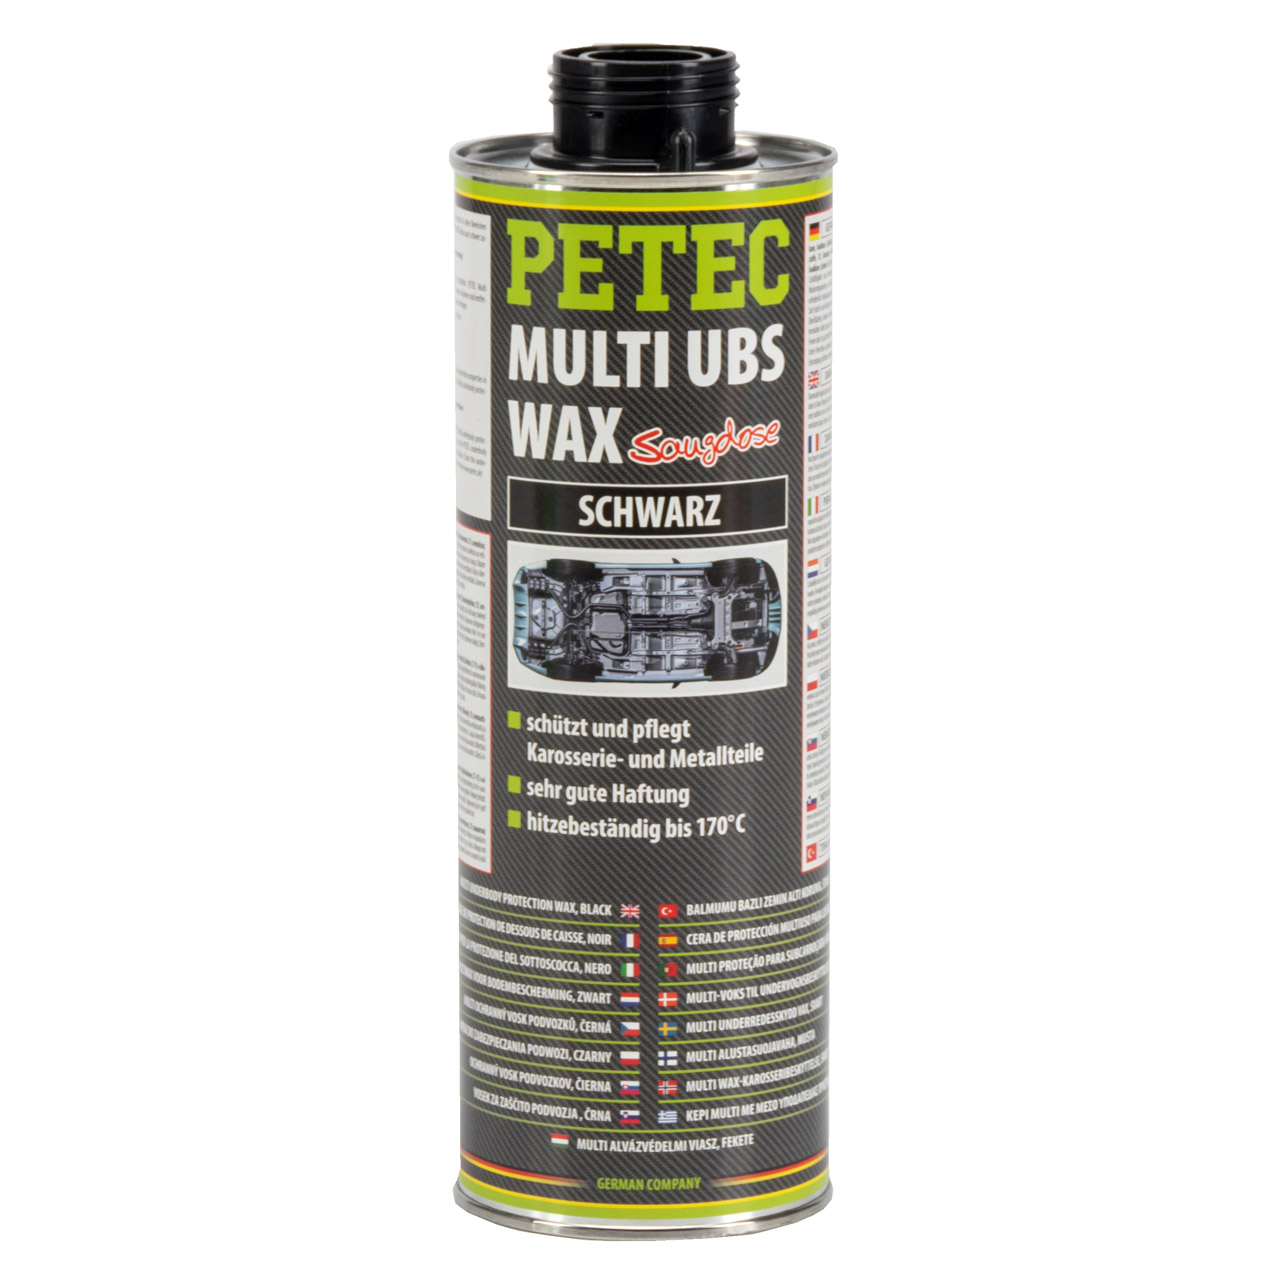 PETEC 73420 MULTI UBS-WAX Saugdose Unterbodenschutz Korrosionsschutz SCHWARZ 1 Liter